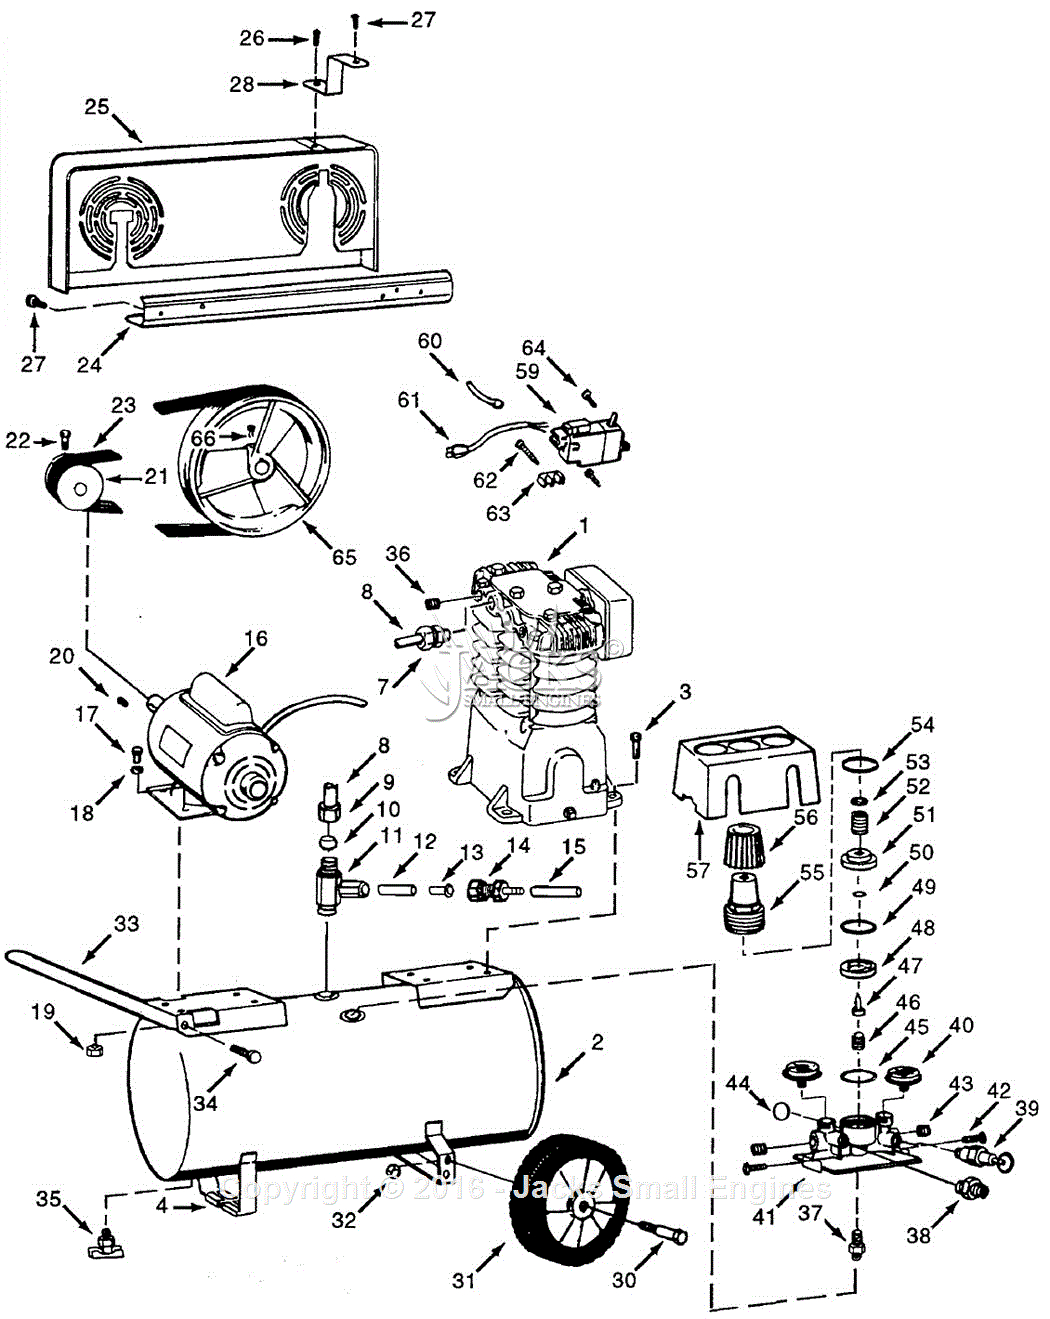 Campbell Hausfeld Air Compressor Parts Diagram Campbell Hausfeld Vt618901 Parts Diagram For Air Compressor Parts